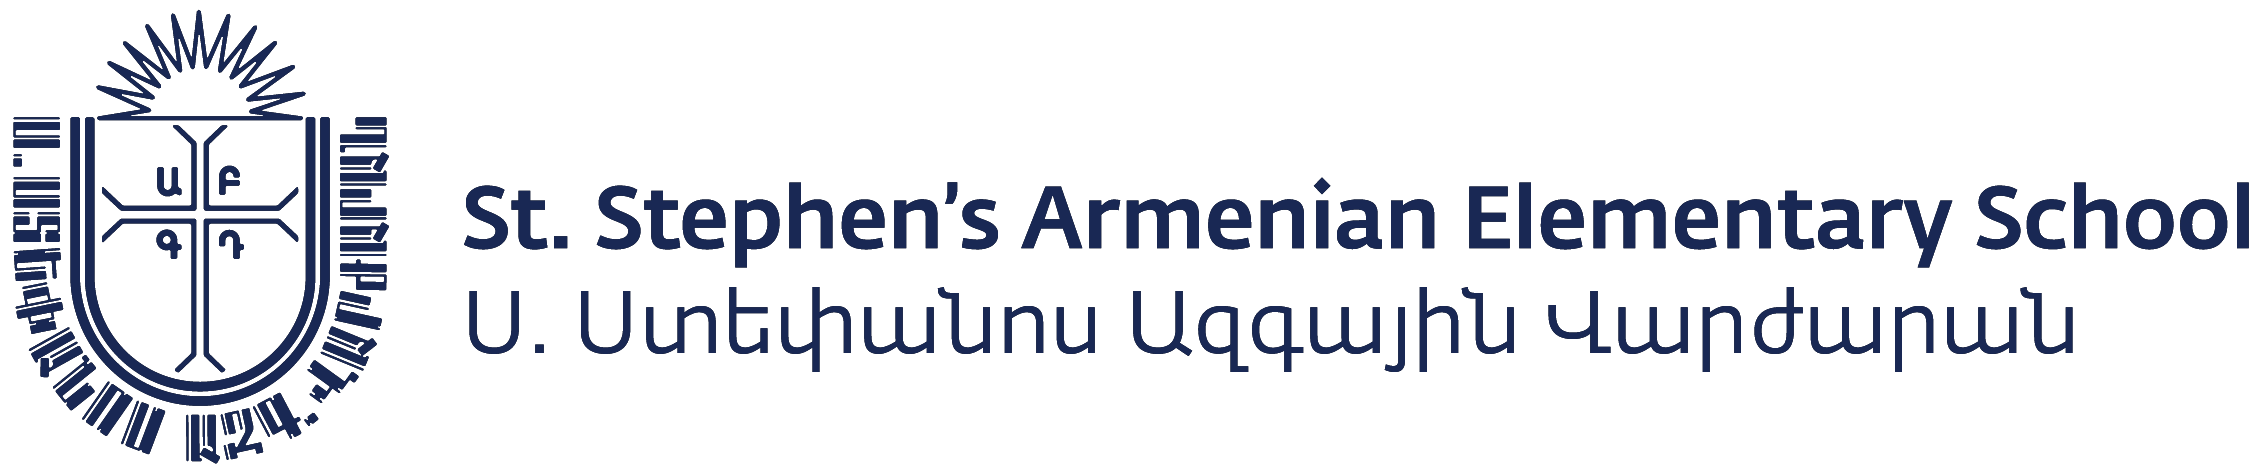 St. Stephen's Armenian Elementary School